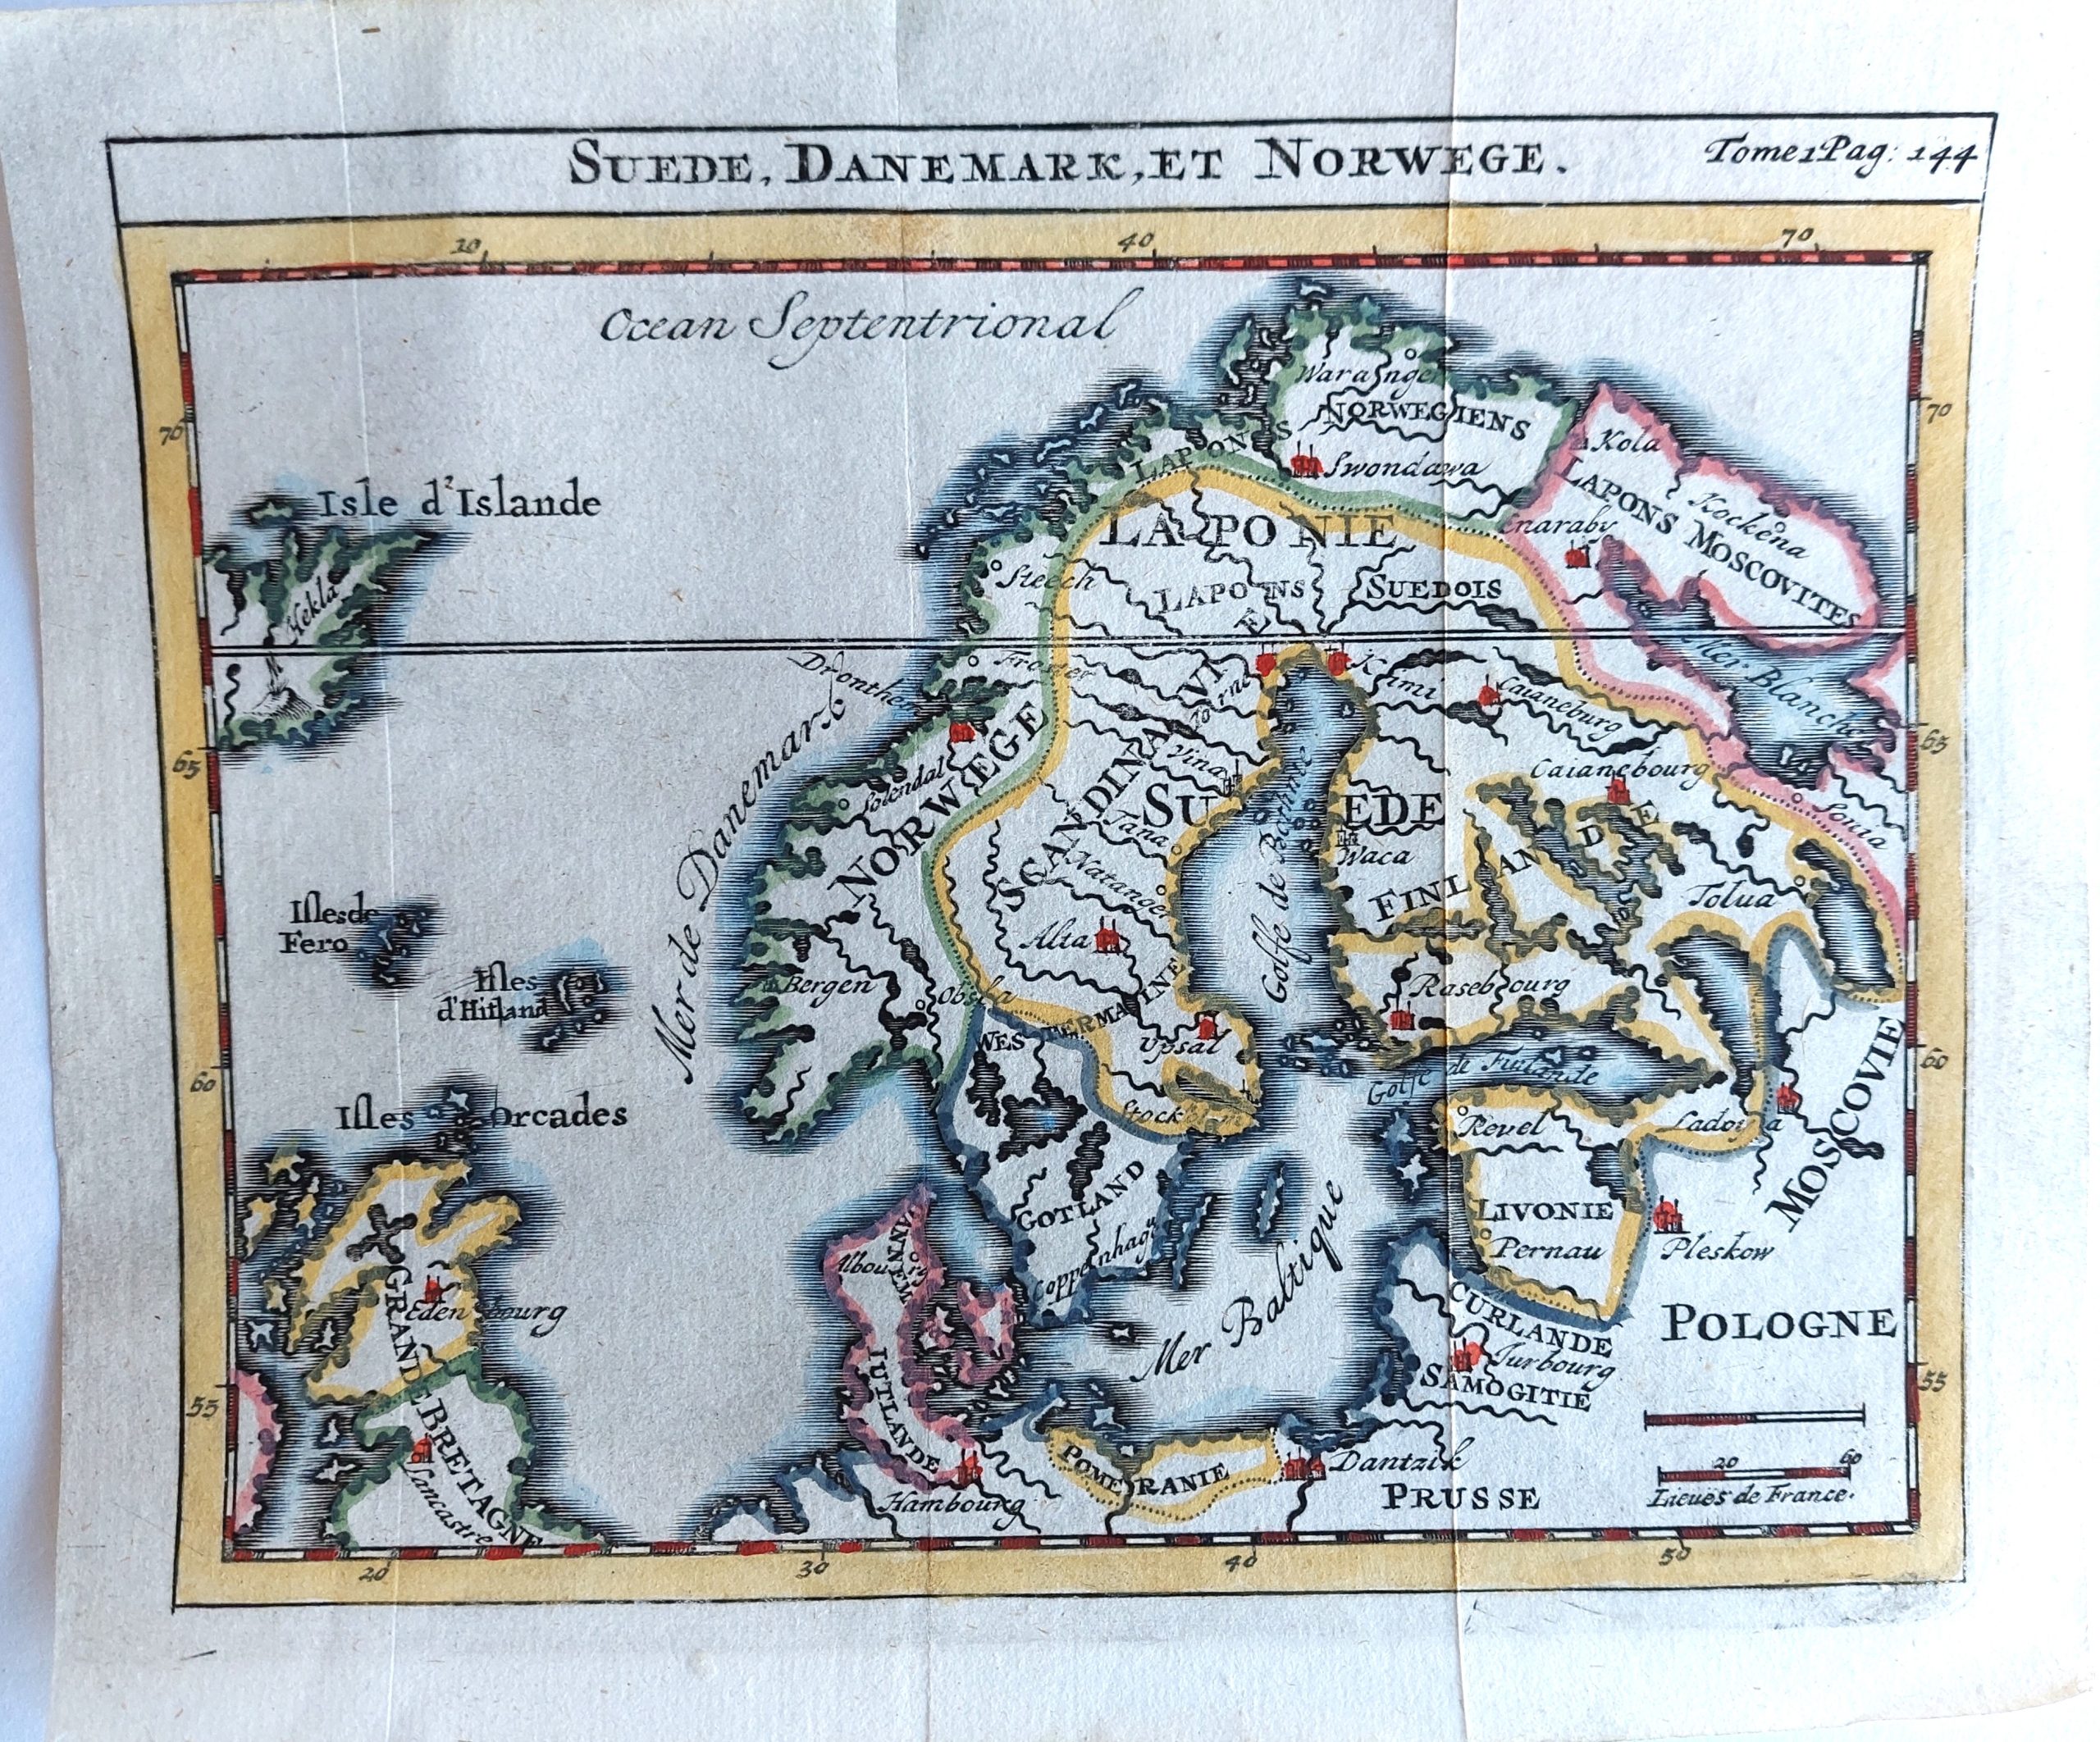 Suede, Danemark, et Norwege.